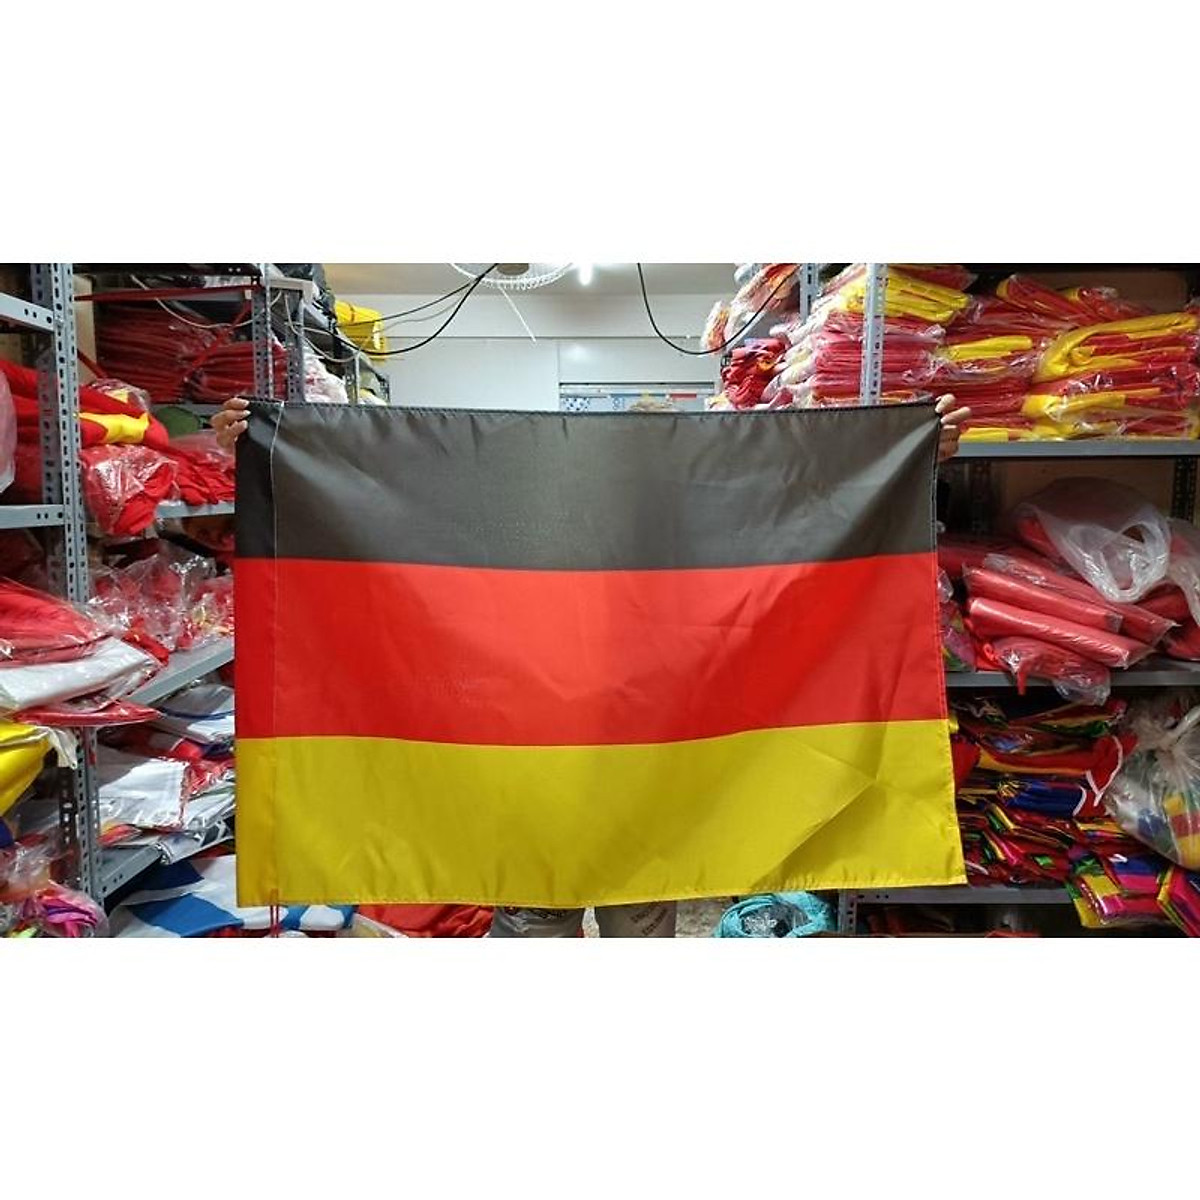 Trang trí quốc kỳ Đức: Trang trí quốc kỳ Đức sẽ làm tăng thêm không khí vui tươi trong các ngày lễ kỷ niệm quan trọng của quốc gia. Từ các lễ kỷ niệm Quốc tế Lao động đến ngày Quốc khánh, quốc kỳ Đức được trang trí khắp nơi với những đề tài đặc biệt như lòng yêu nước, đoàn kết và sự phát triển của quốc gia. Hãy cùng đón các ngày lễ quan trọng cùng quốc kỳ đầy ý nghĩa.